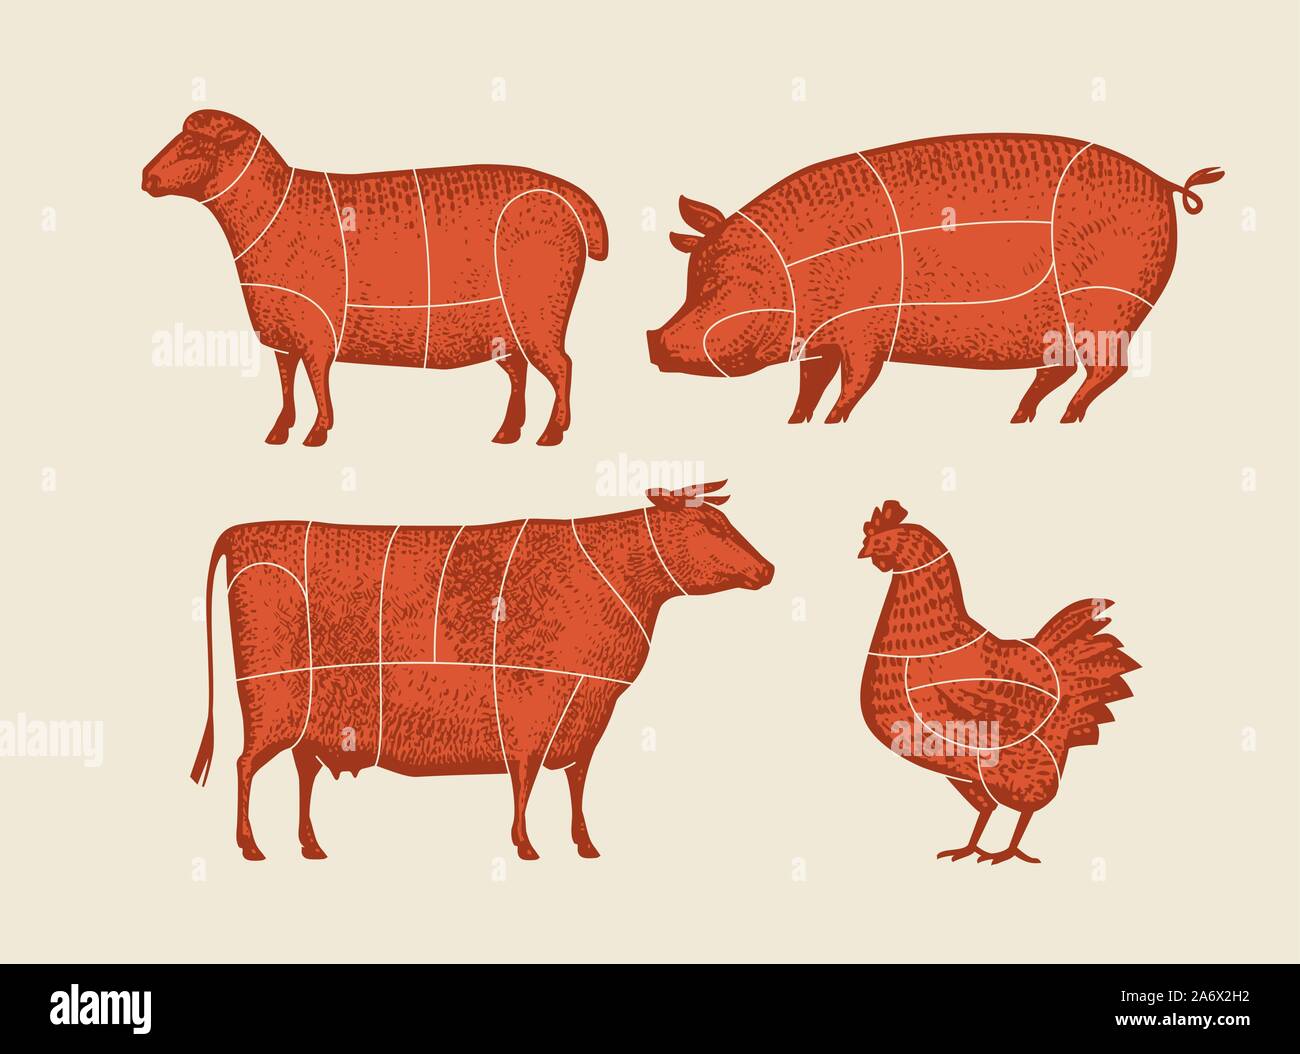 Animali da fattoria con linee di taglio di carne. Immagine vettoriale retrospettiva Illustrazione Vettoriale